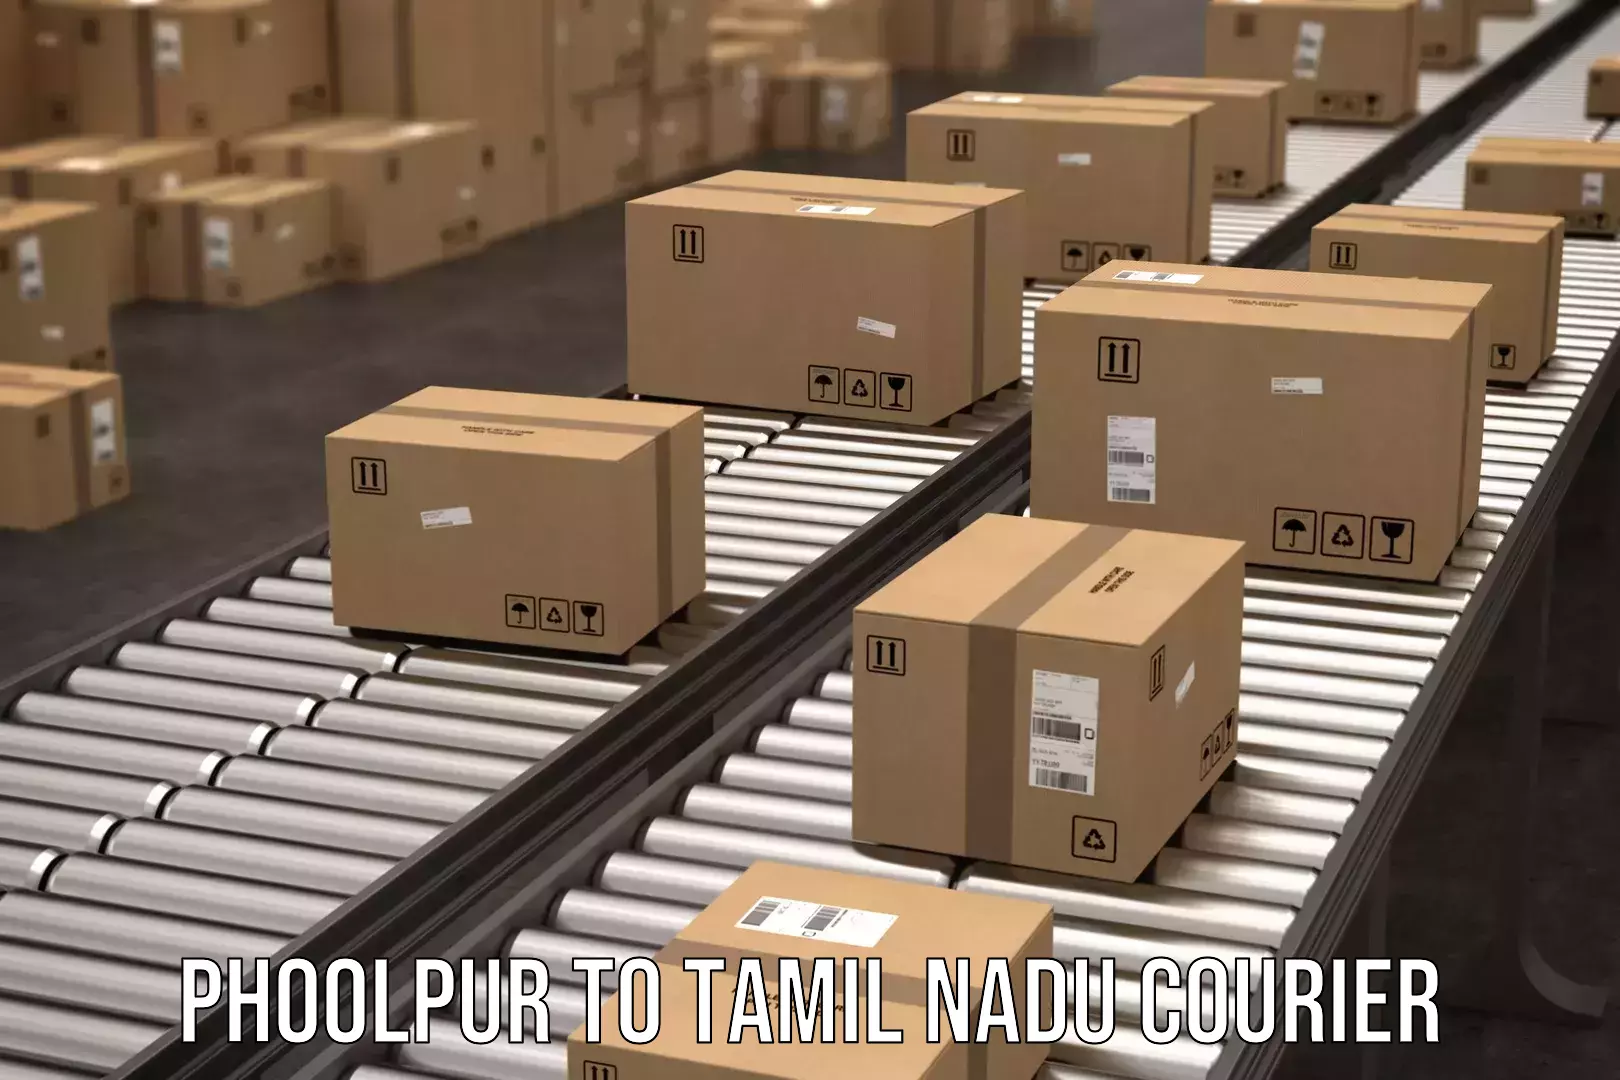 Express package handling Phoolpur to Tamil Nadu